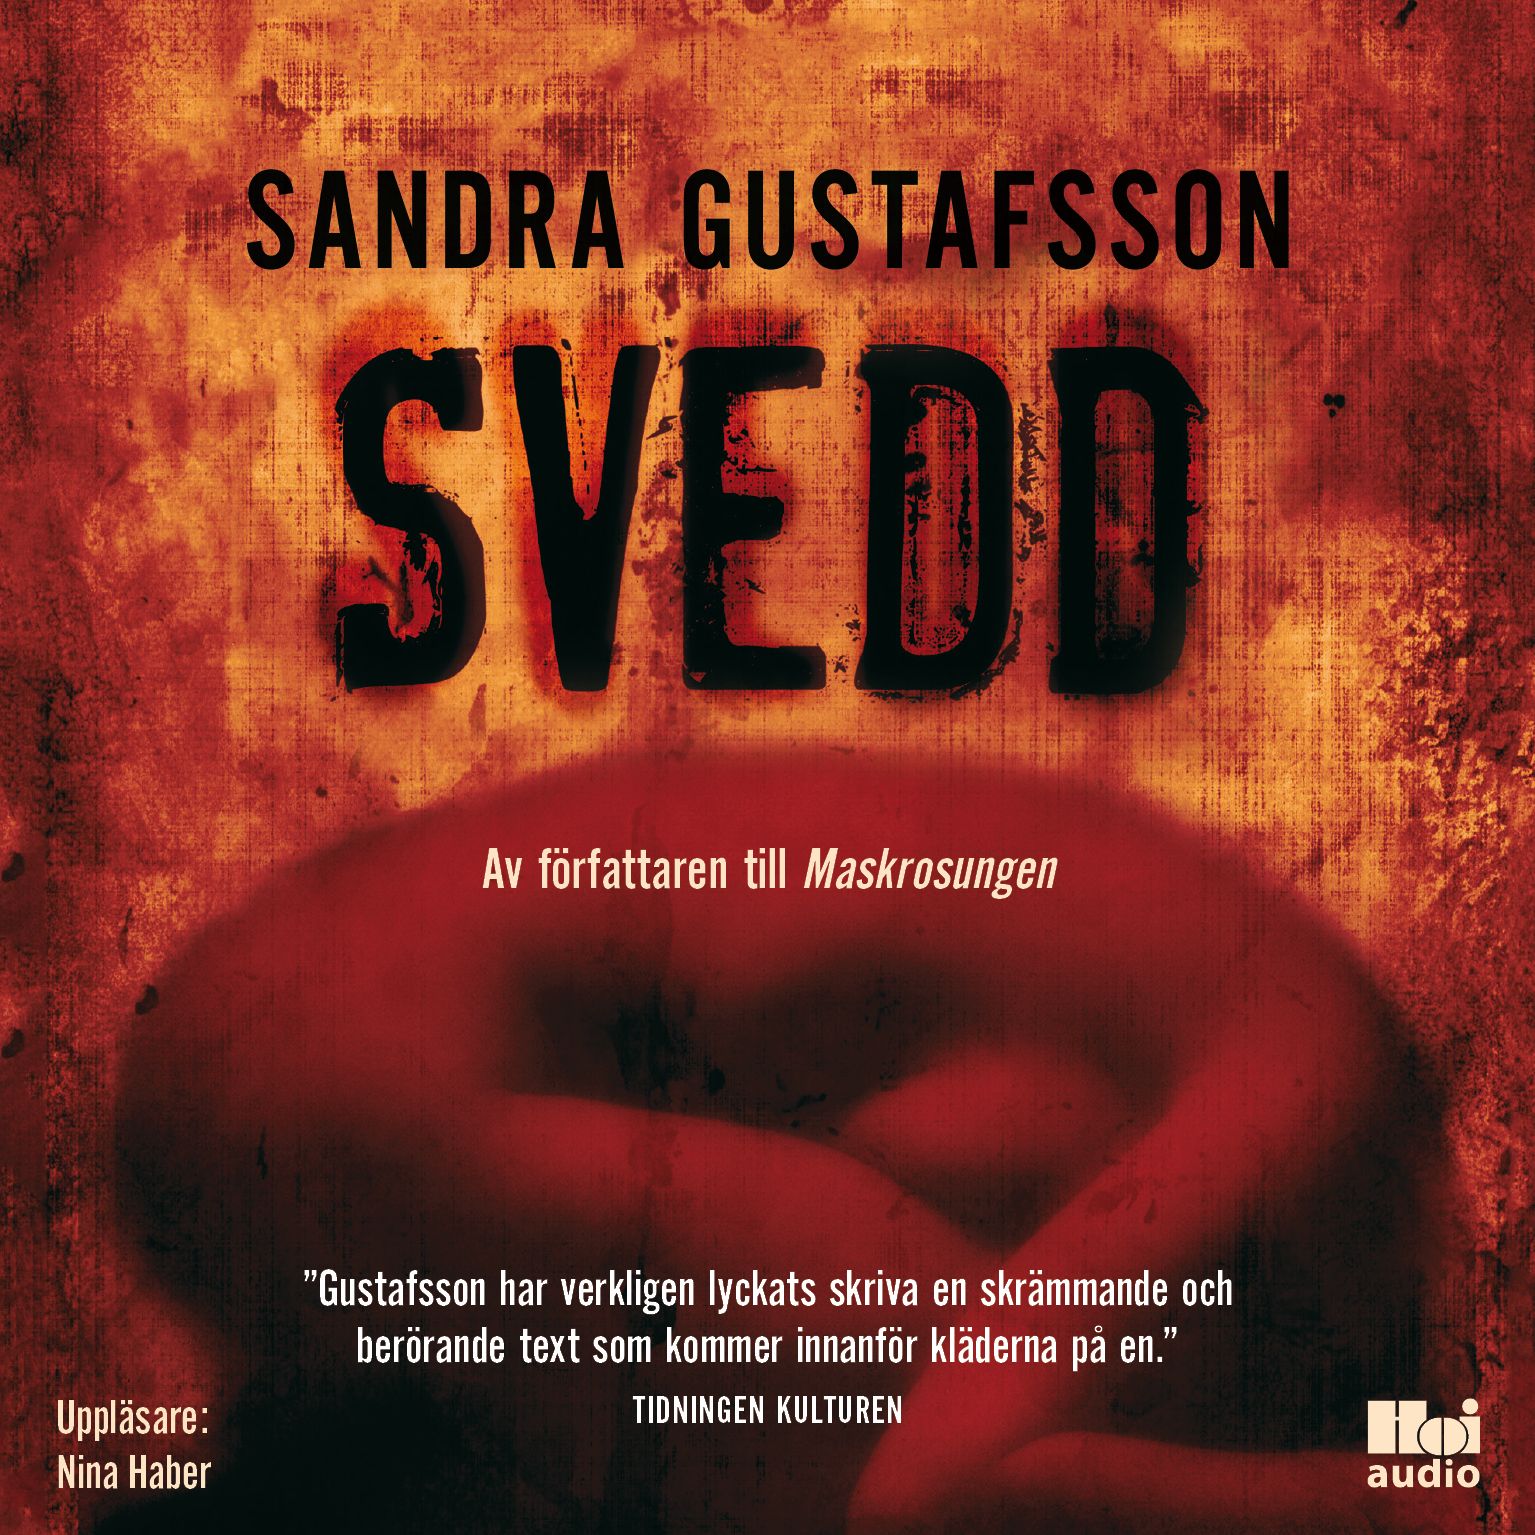 Svedd, ljudbok av Sandra Gustafsson